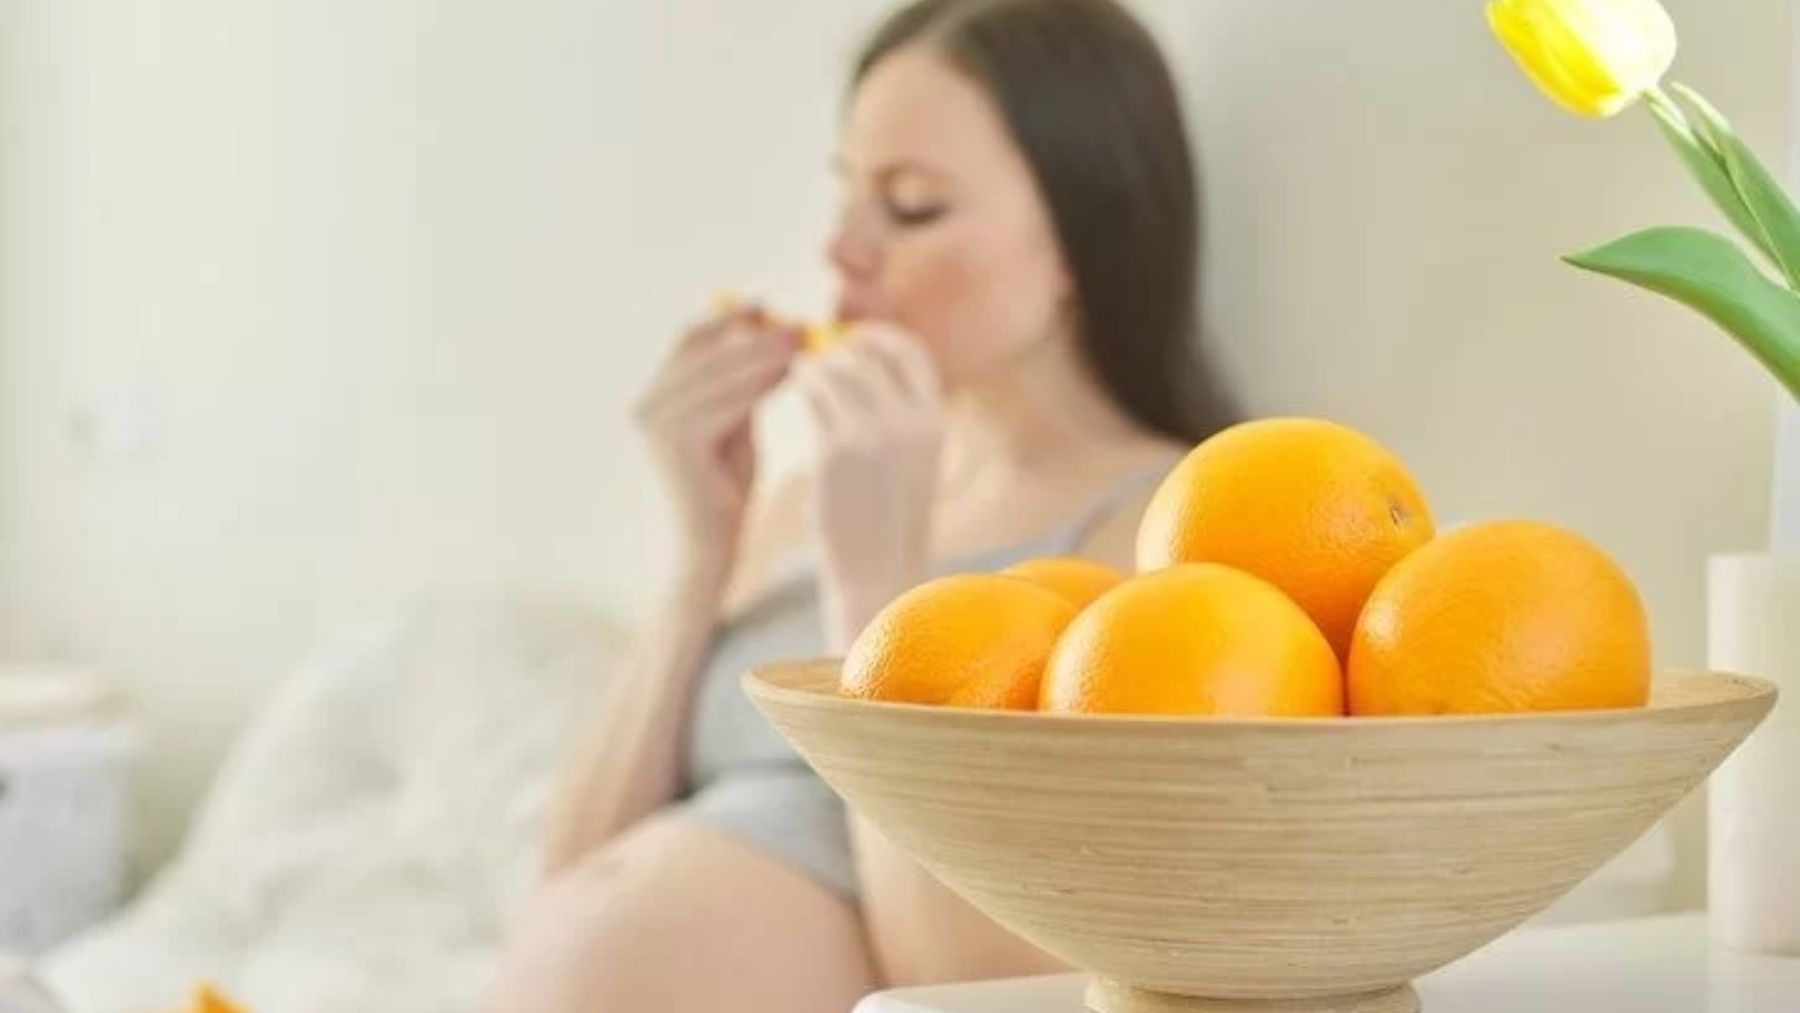 Descubre los beneficios de comer naranjas durante el embarazo y si existe algún riesgo